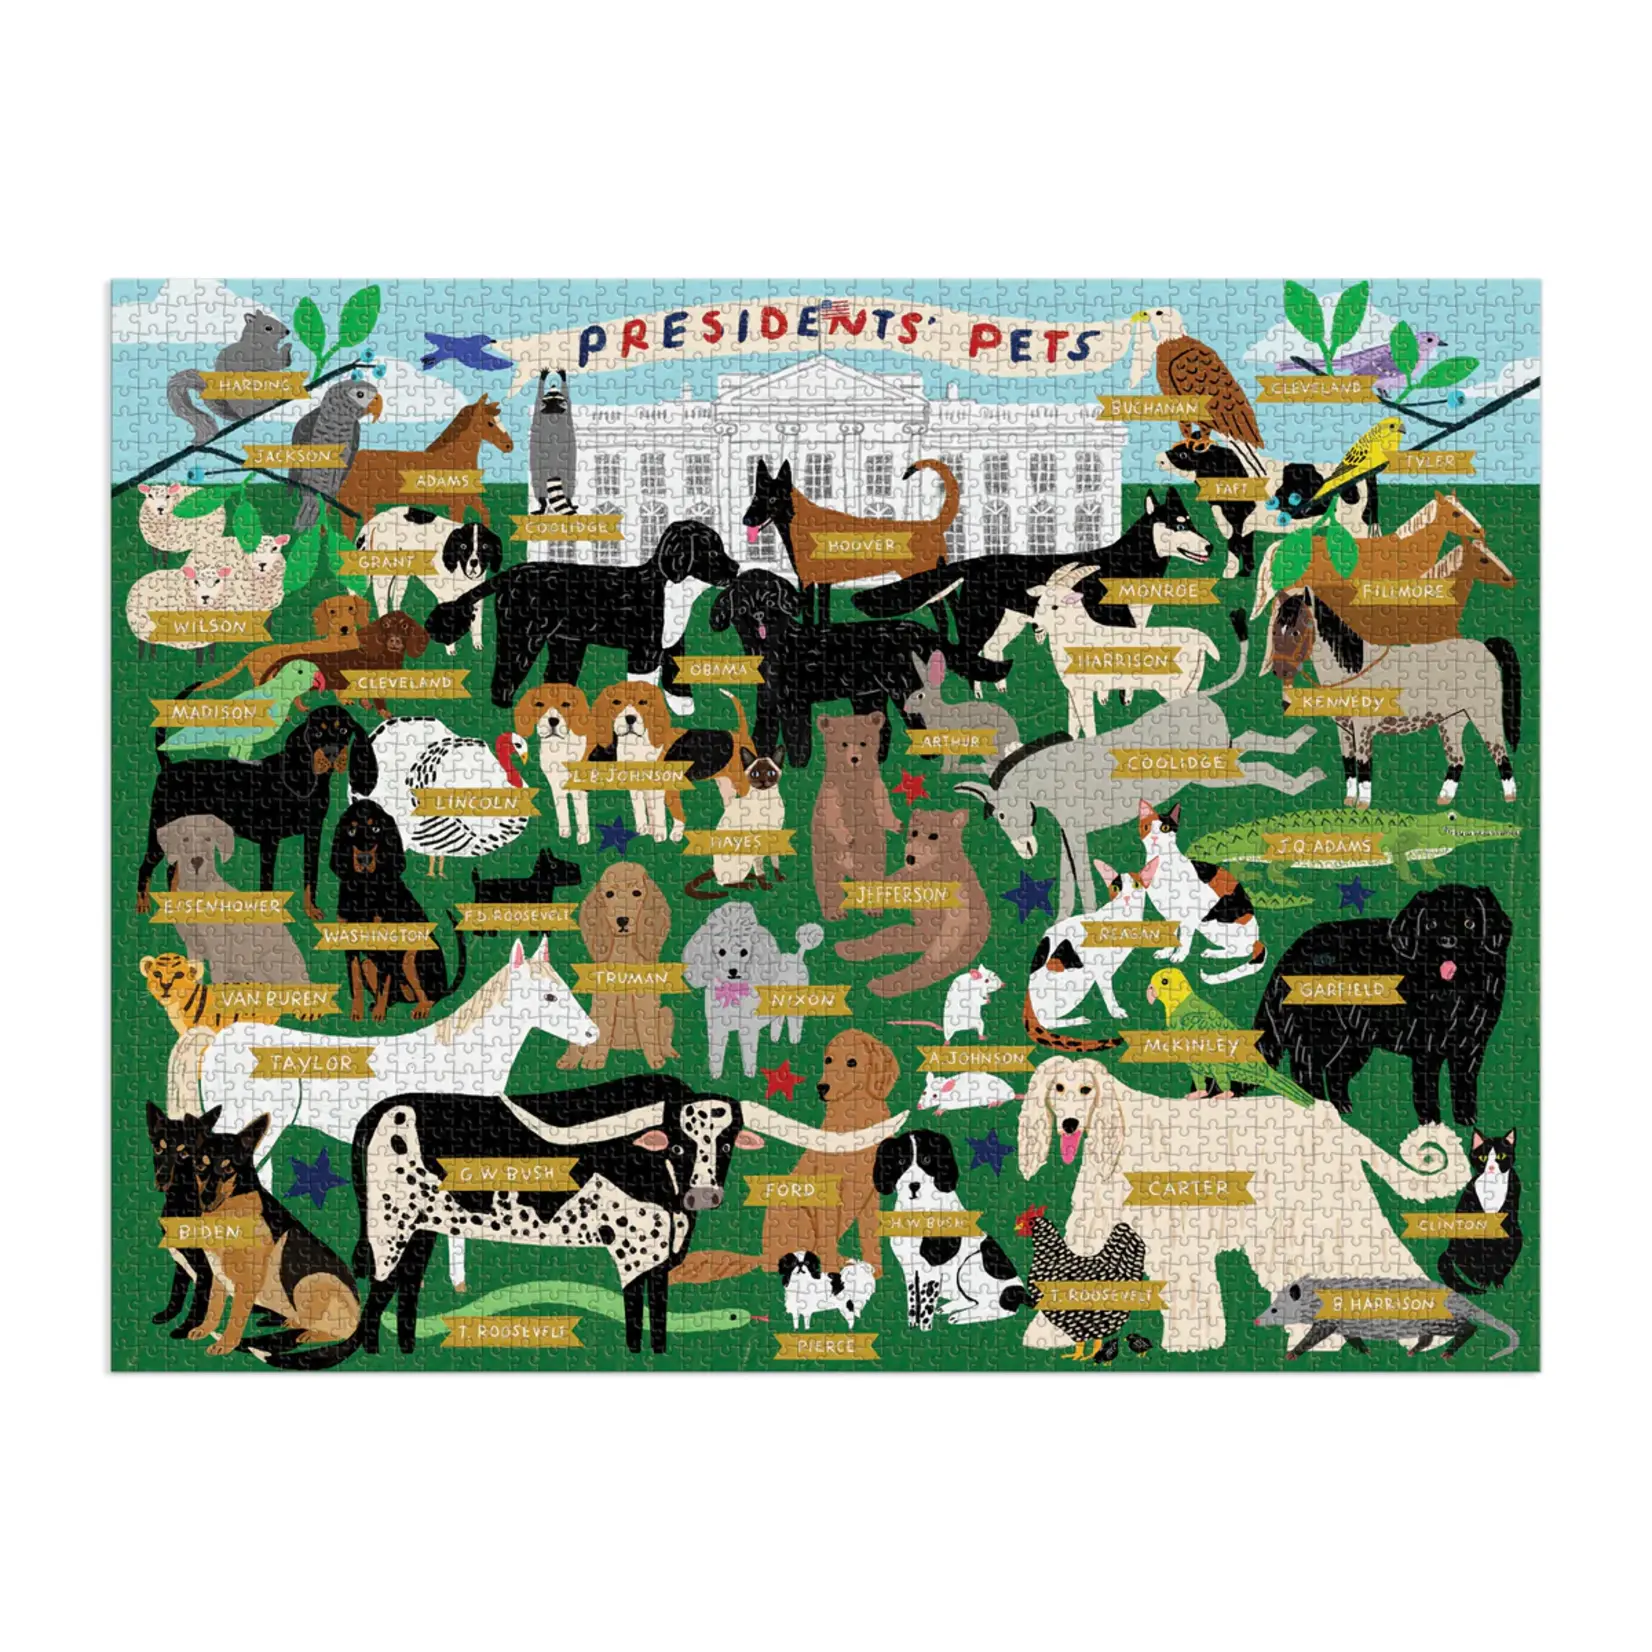 Hachette Presidents' Pets, 2000-Piece Jigsaw Puzzle